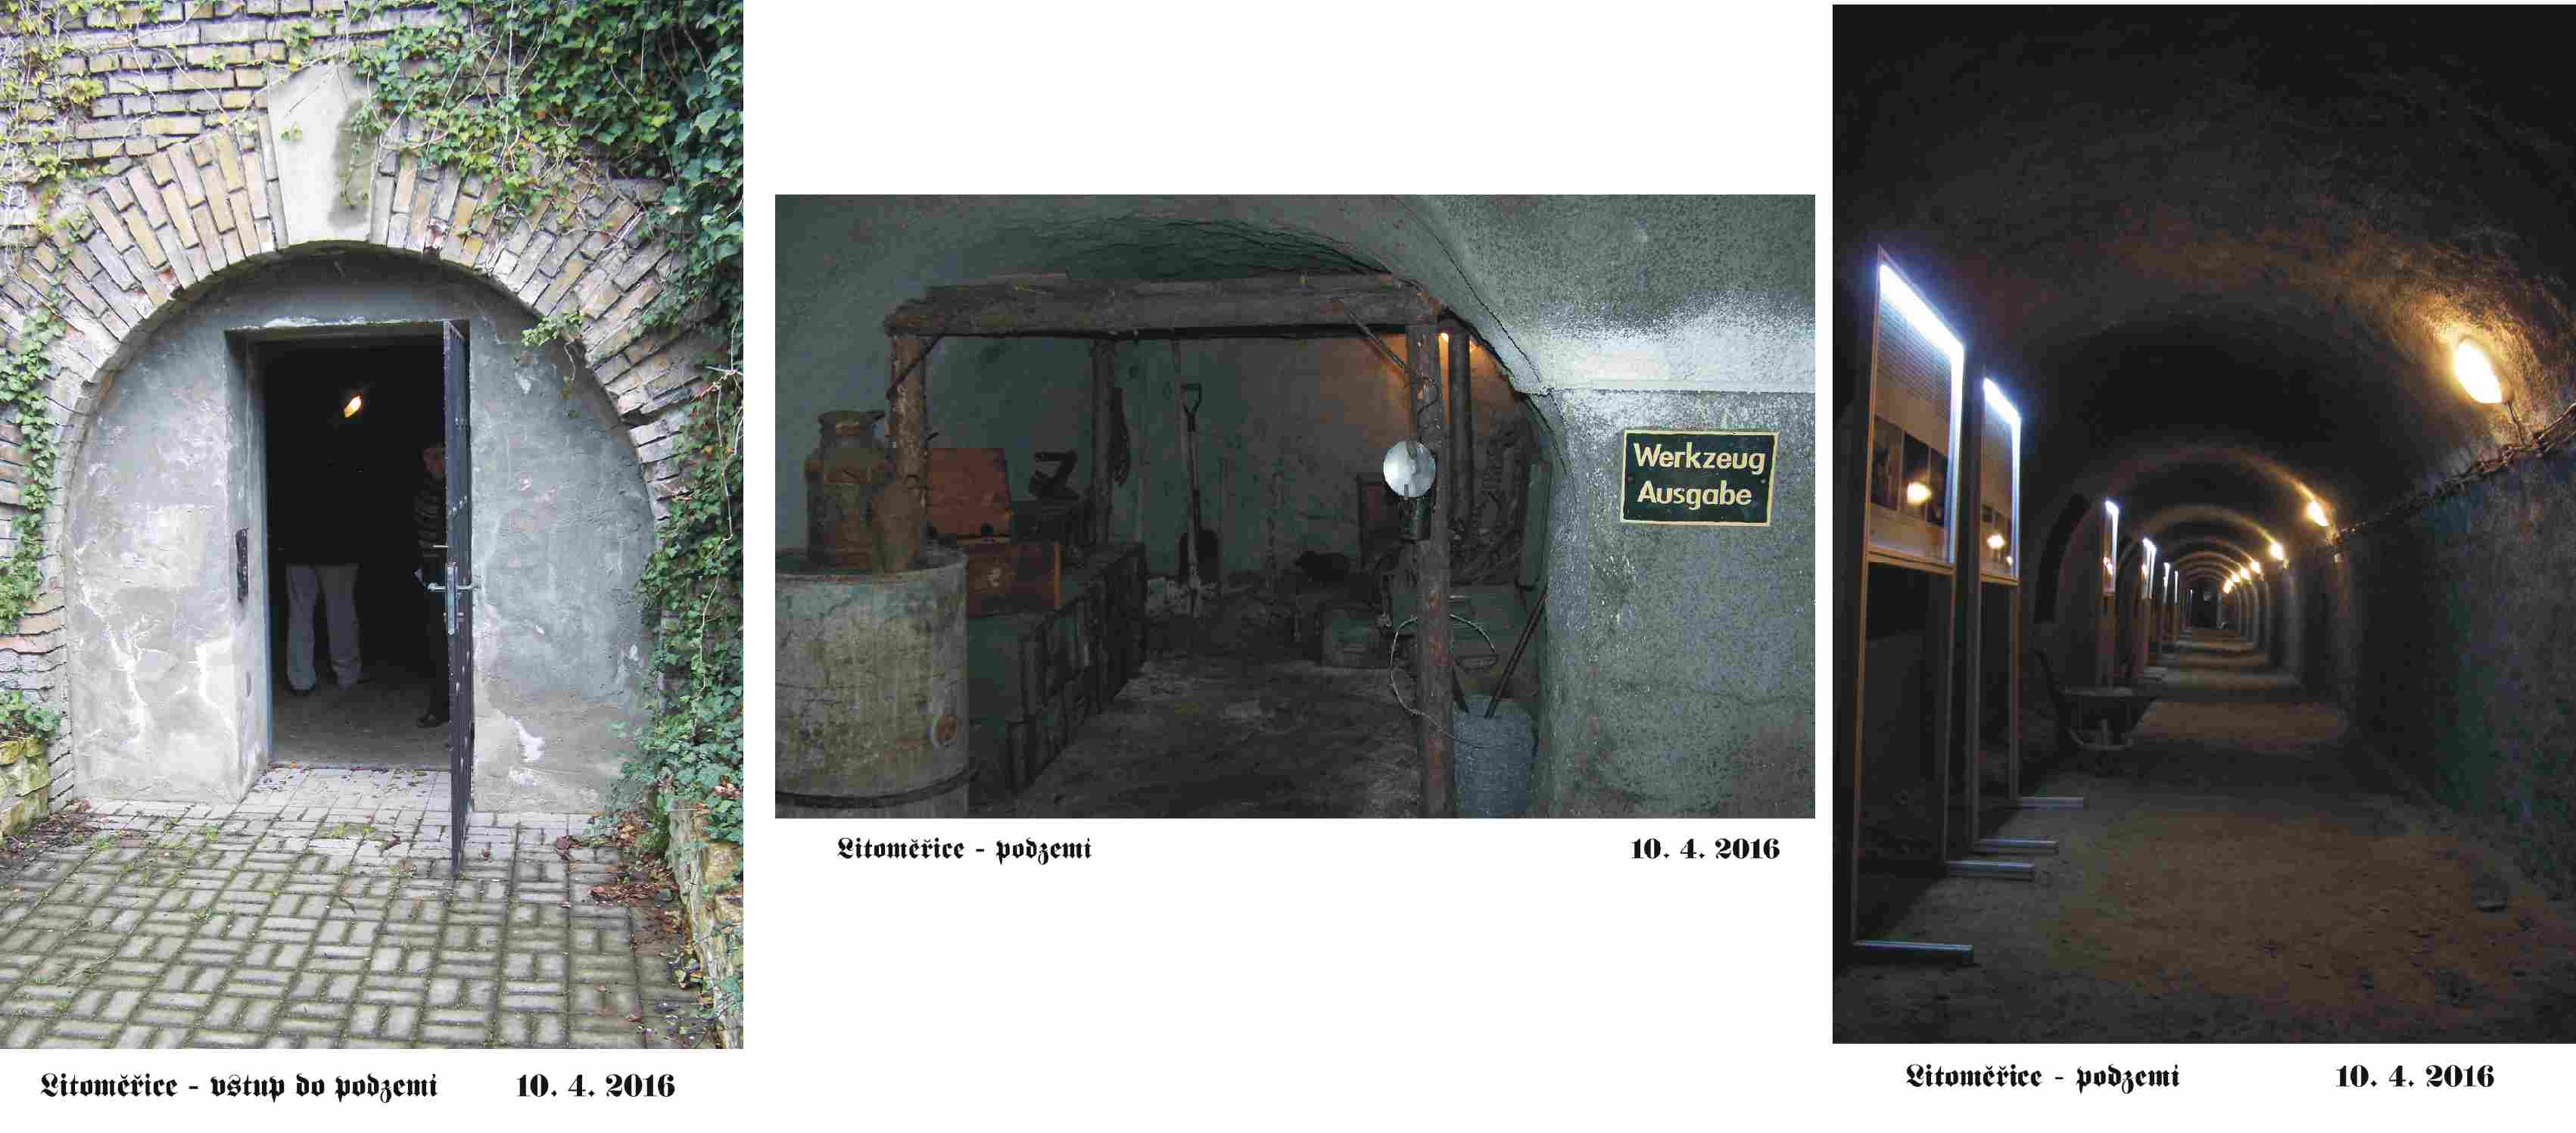 podzemí s expozicí dolu Richard